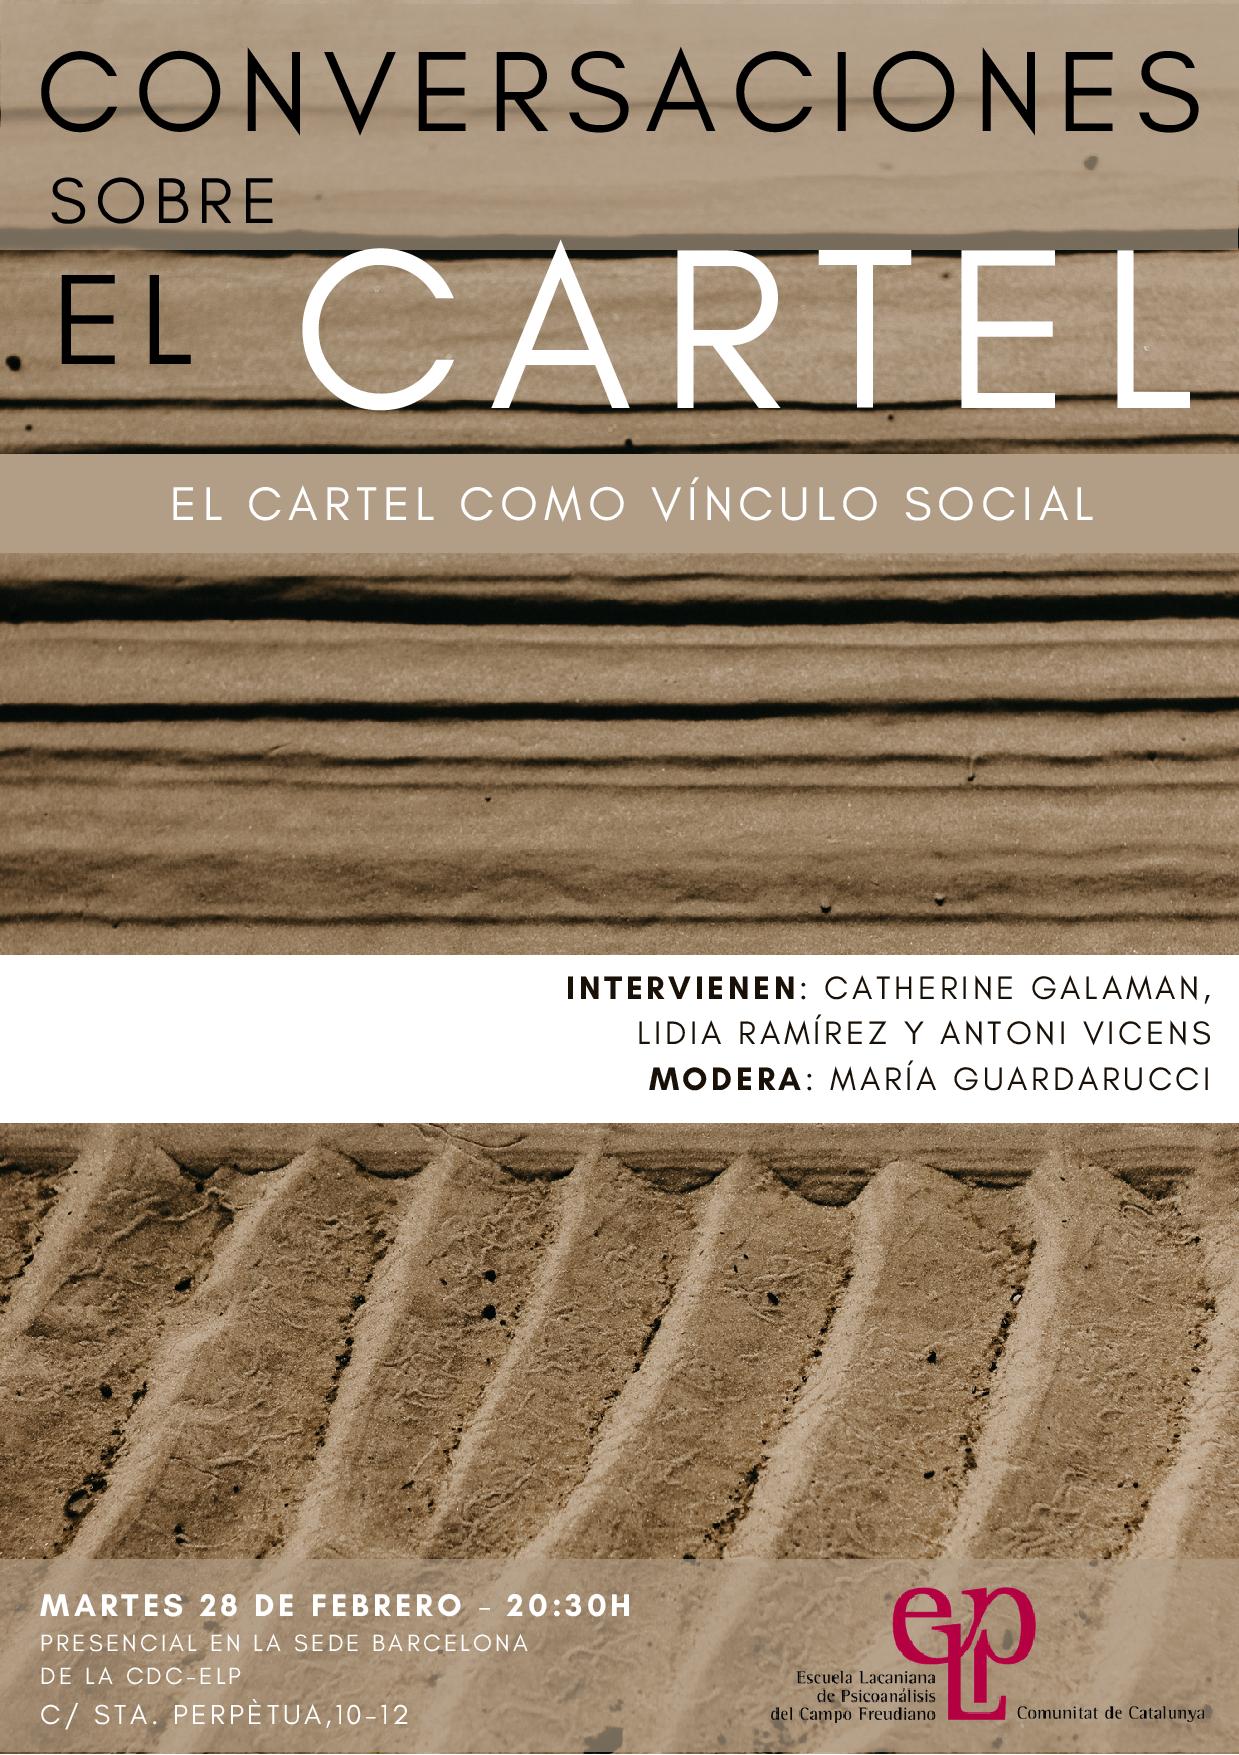 CONVERSACIONES SOBRE EL CARTEL
El cartel como vínculo social